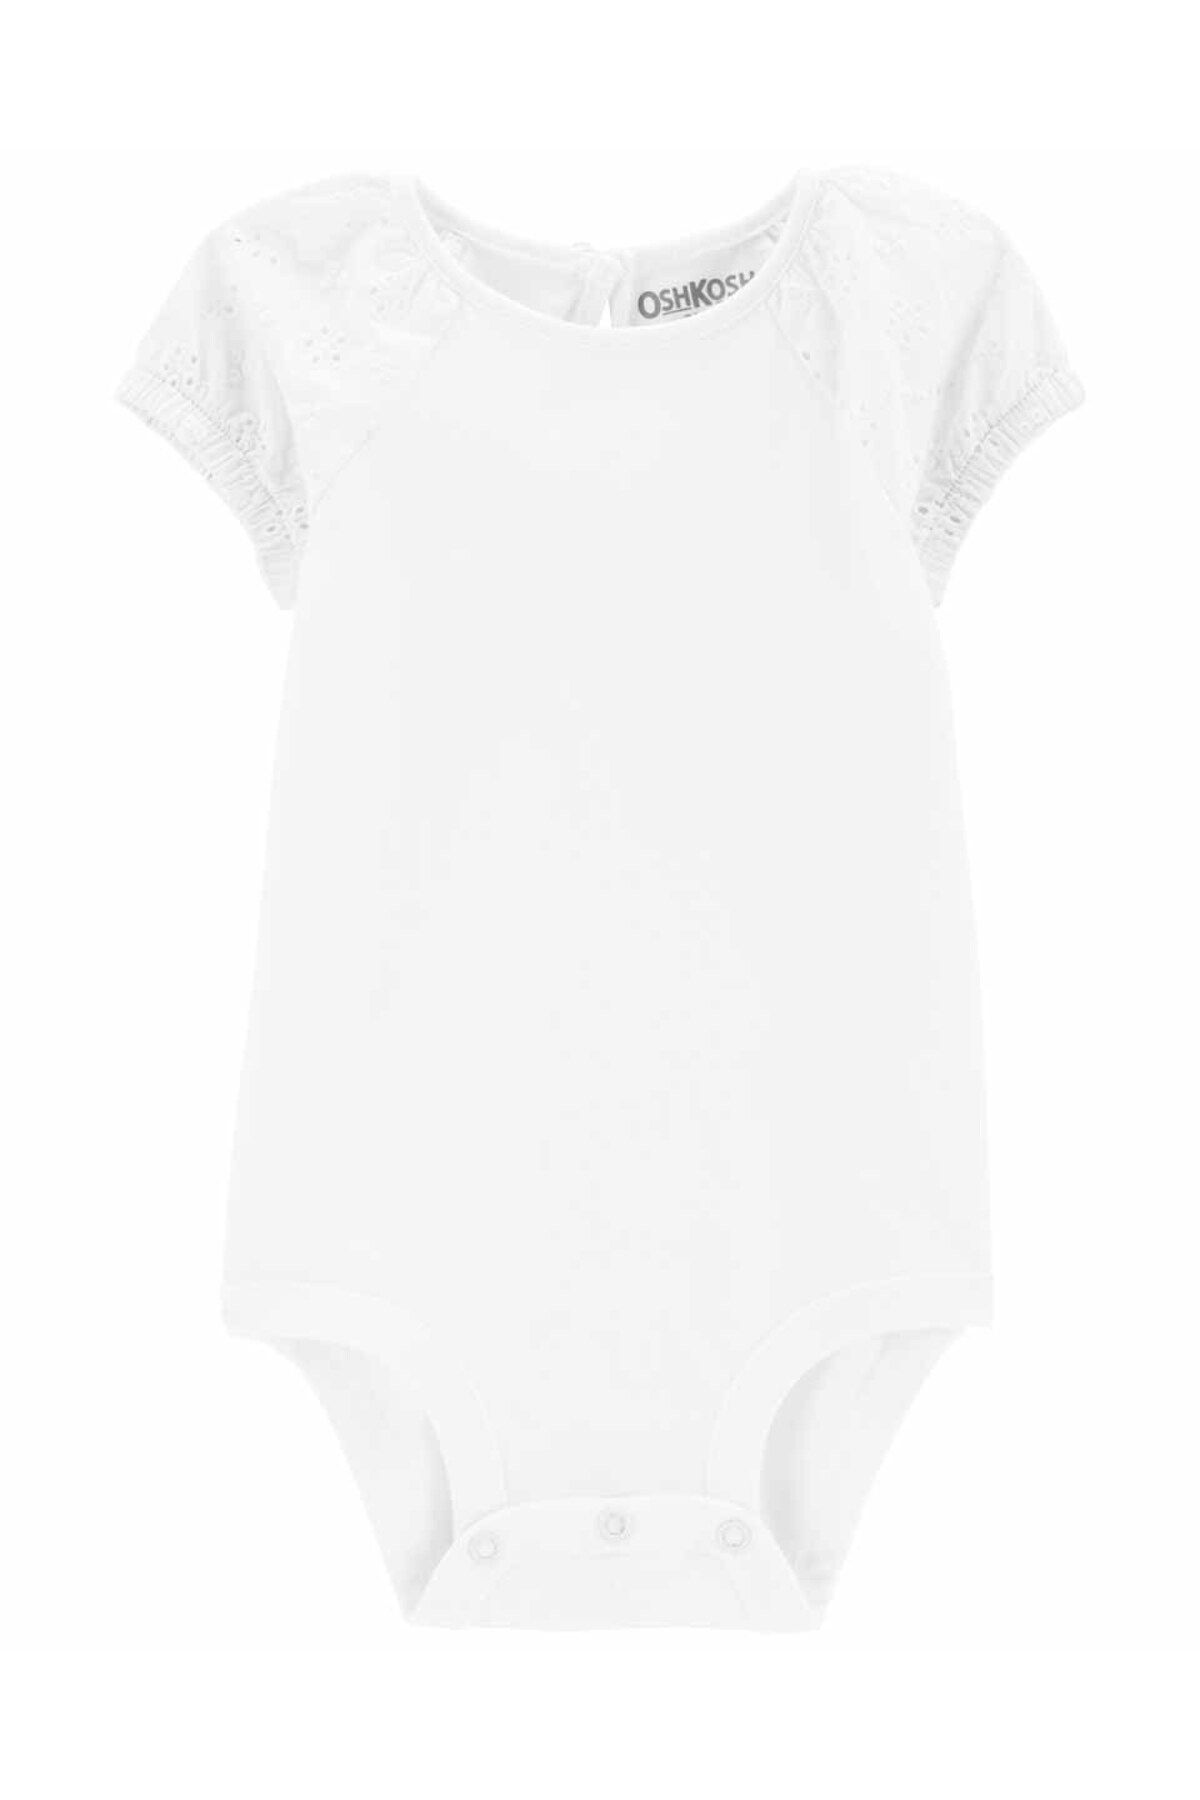 Oshkosh B’gosh Kız Bebek Kısa Kollu Body Beyaz